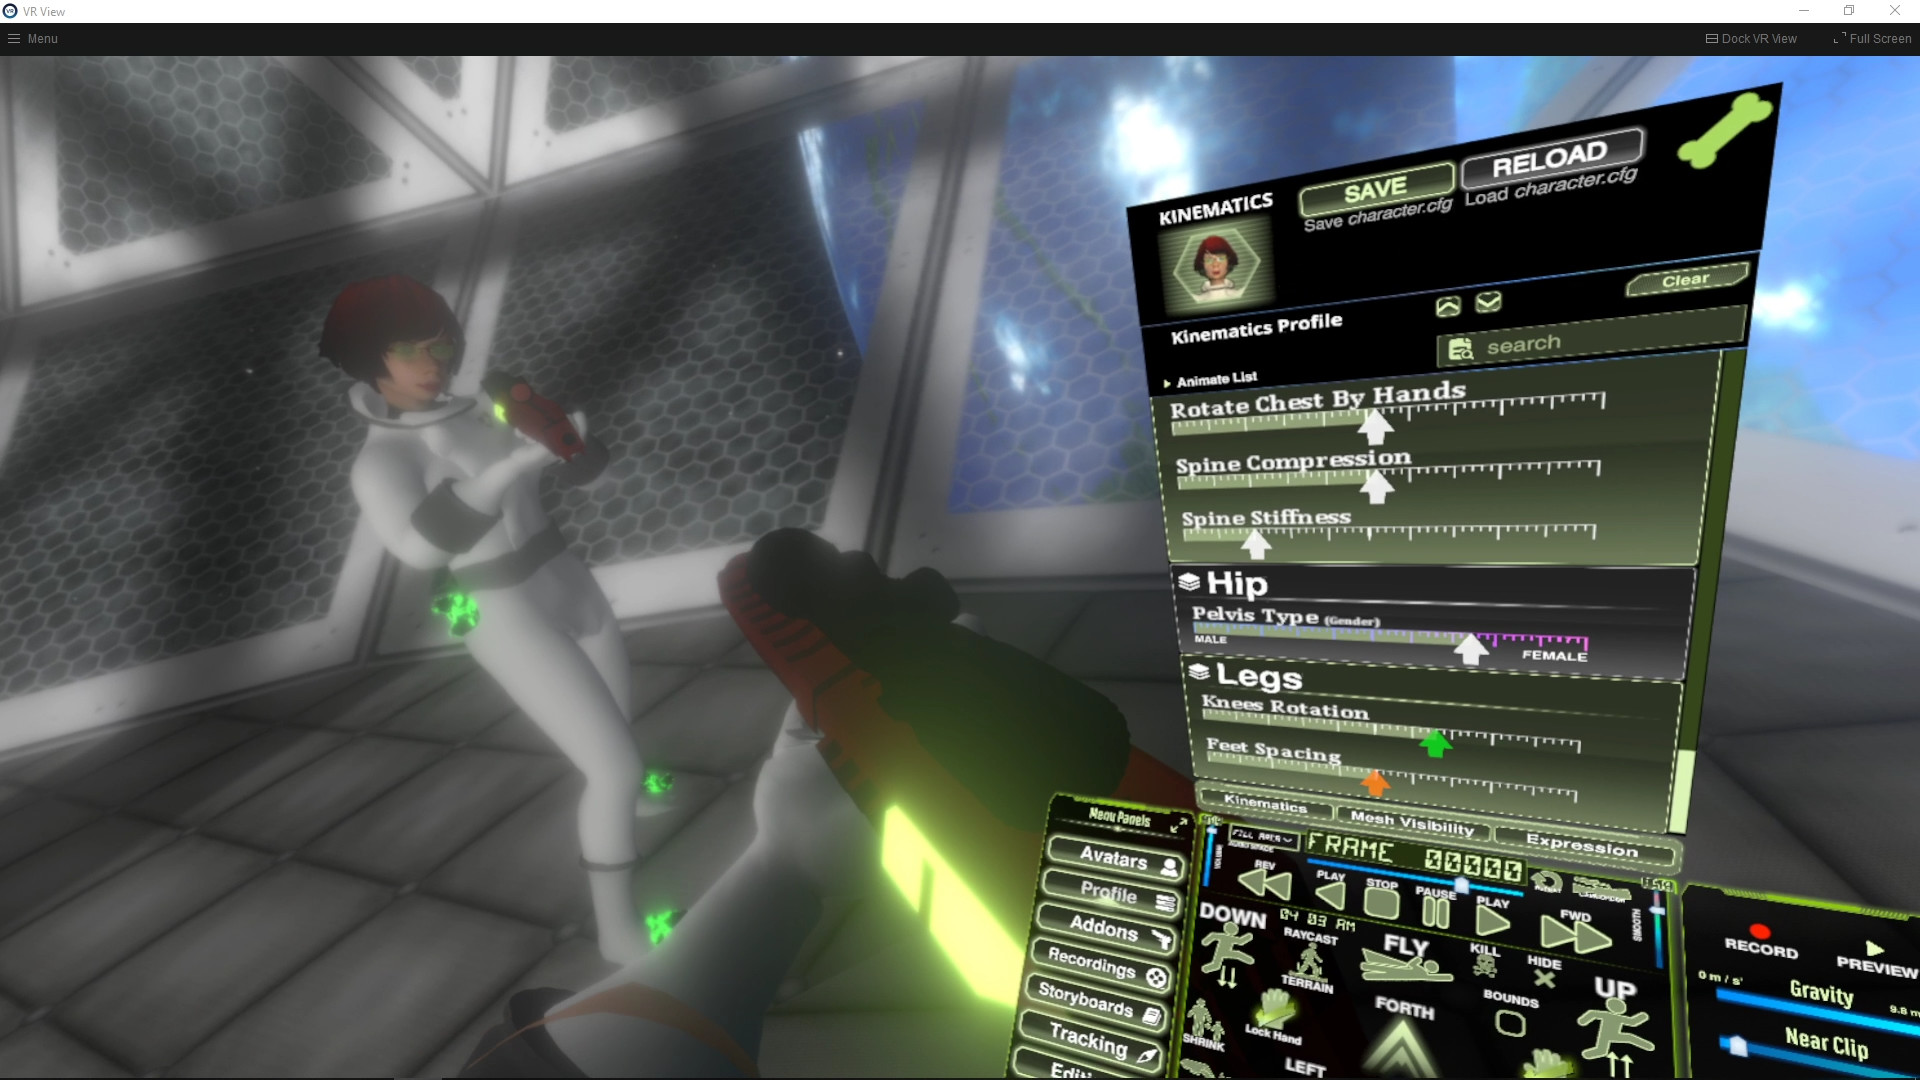 Mocap Fusion [ VR ] screenshot